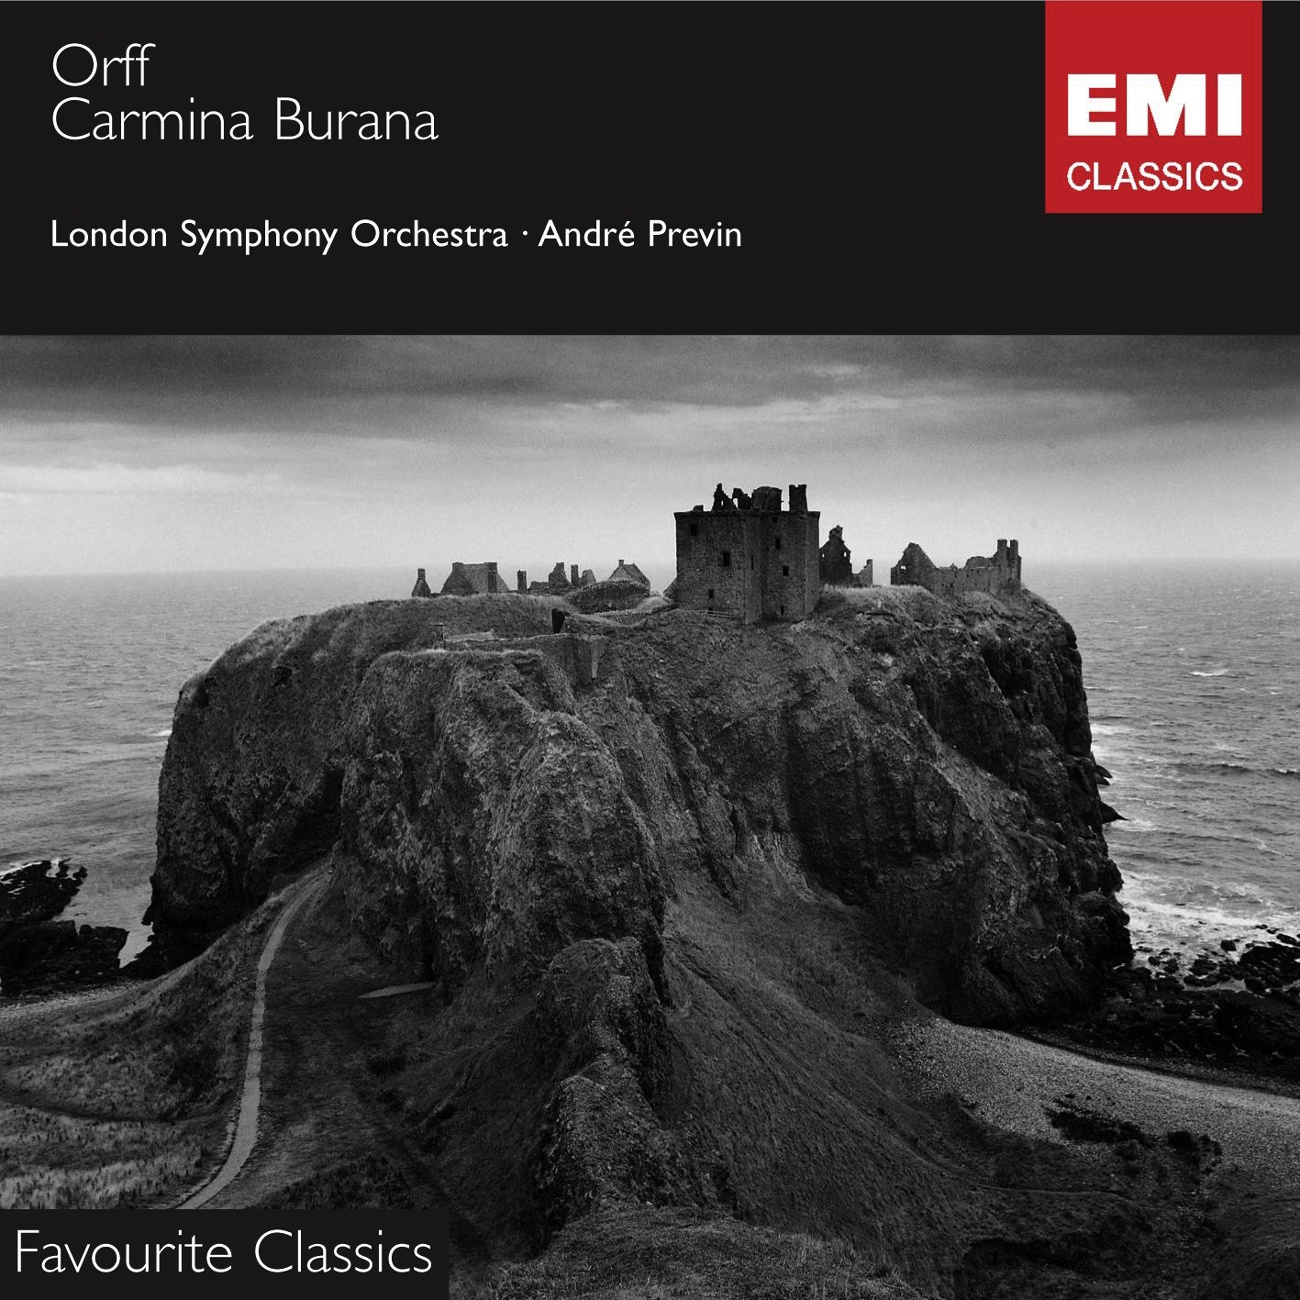 Carmina Burana - Cantiones profanae (1997 Digital Remaster), III - Cours d'amour: No. 20 - Veni, veni, venias